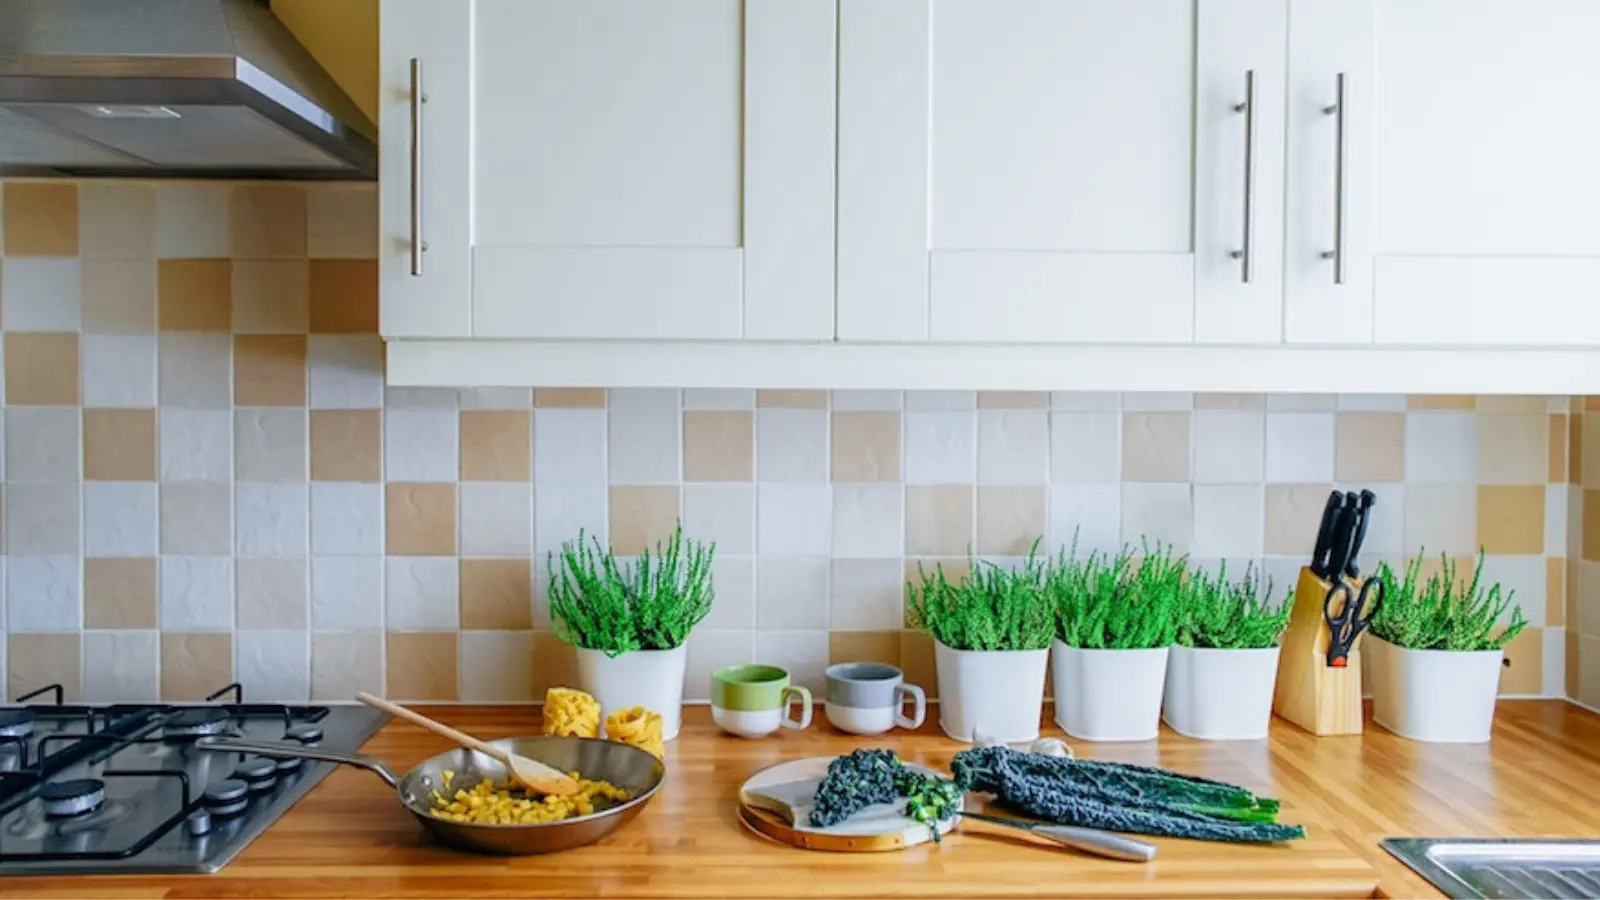 Ways to make the kitchen eco-friendly